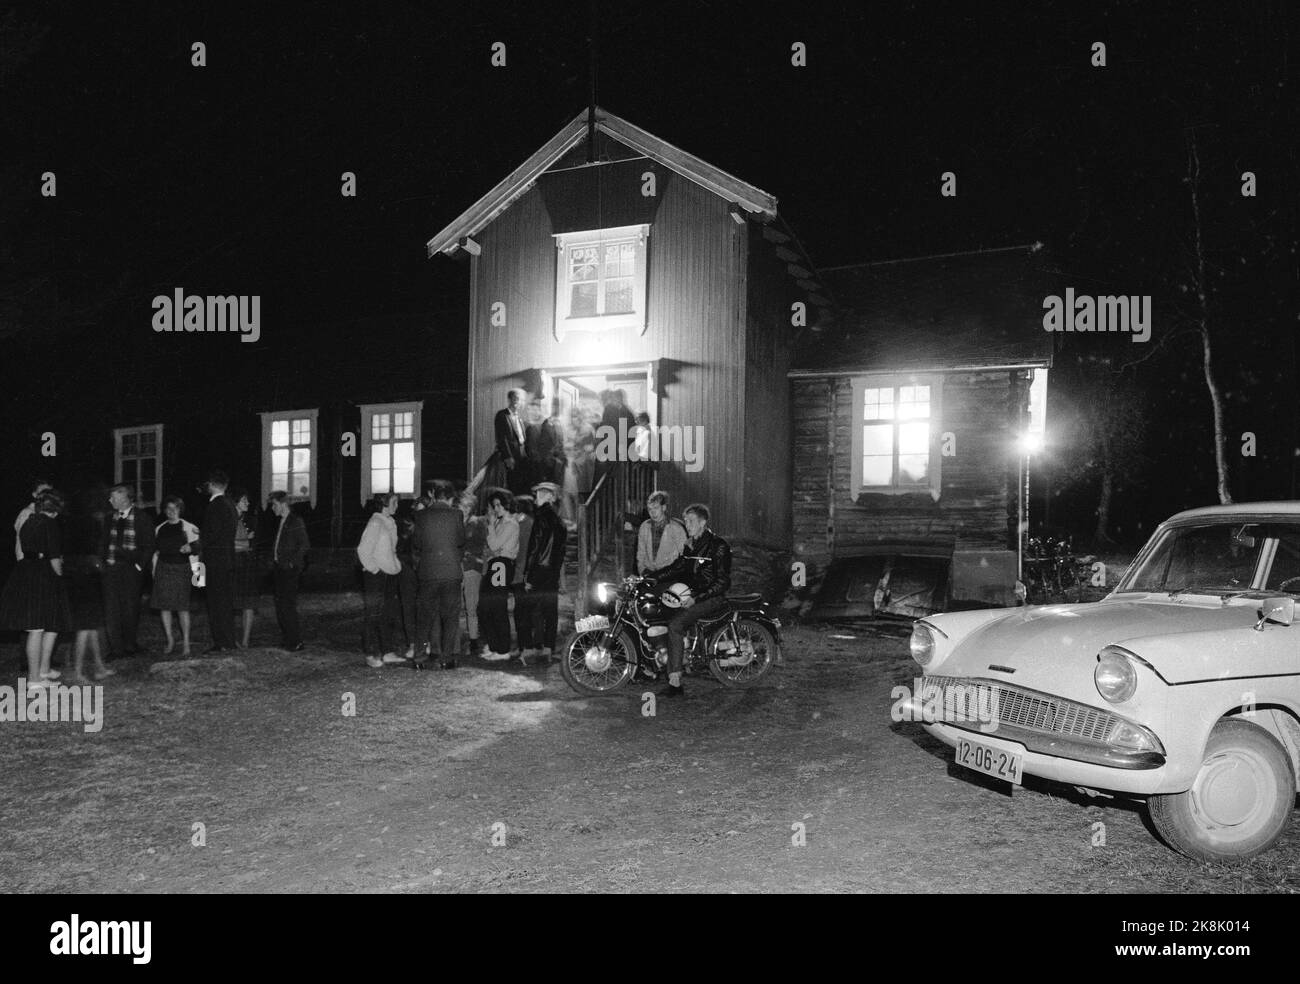 RØROS Oktober 1960 Dans på lokalet i Røros-traktene. Eksteriør av forsamlingslokalet Sundet med ungdom, motorsykler og biler utenfor. Foto: Storløkken / Aktuell / NTB Stock Photo